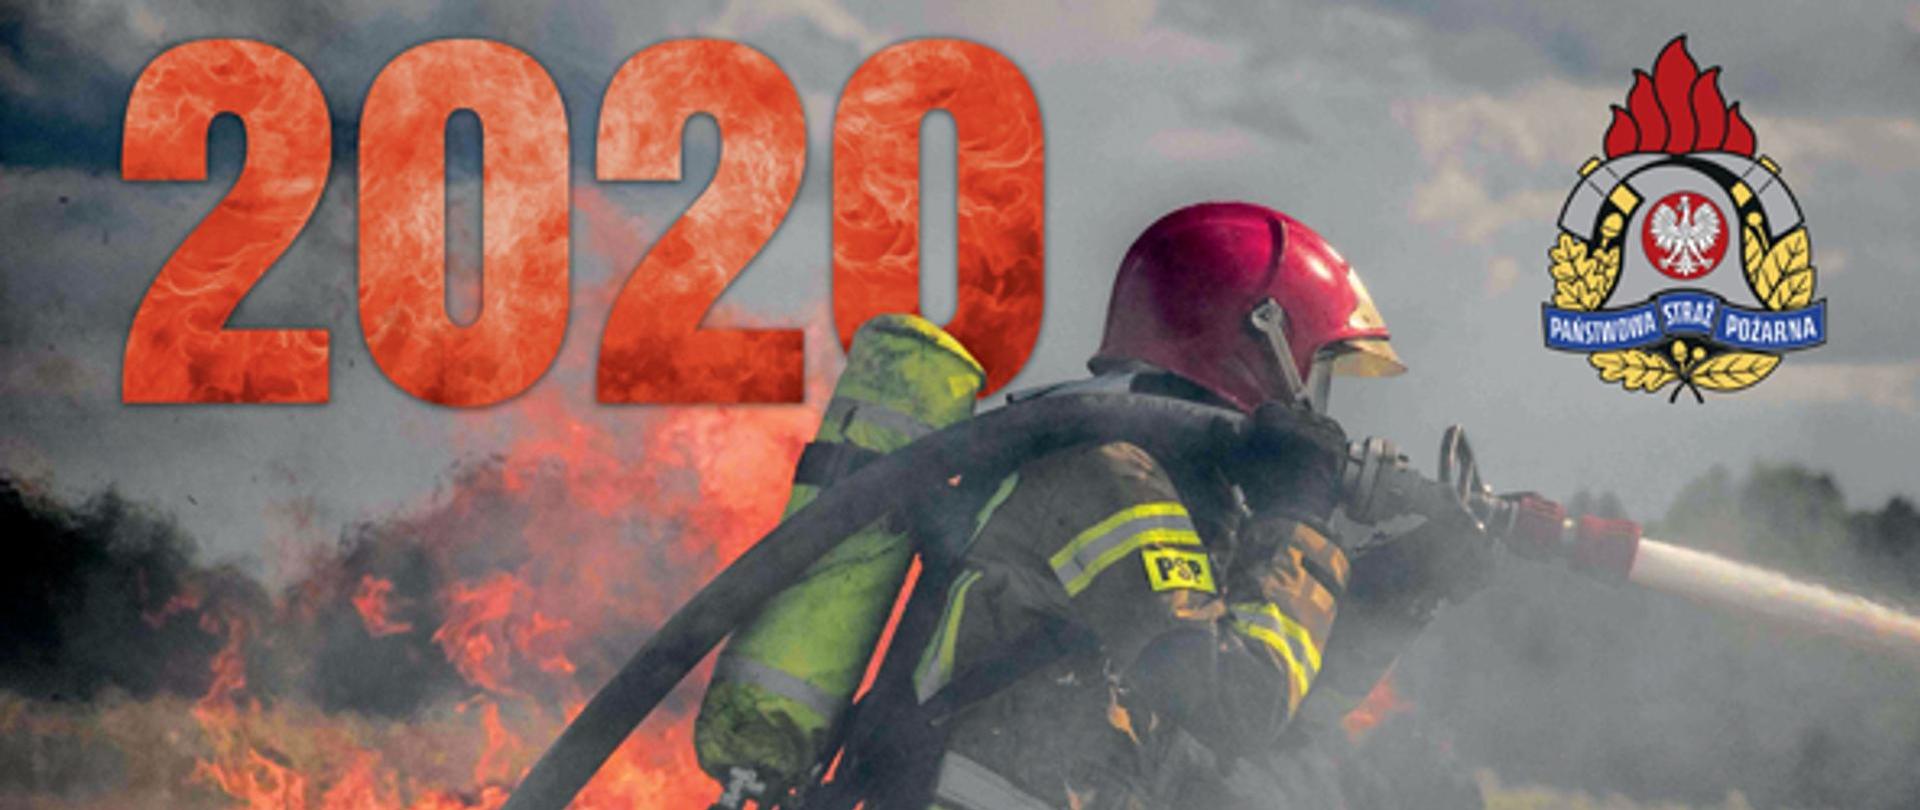 Strażak gaszący pożar w tle rok 2020 i logo PSP. 